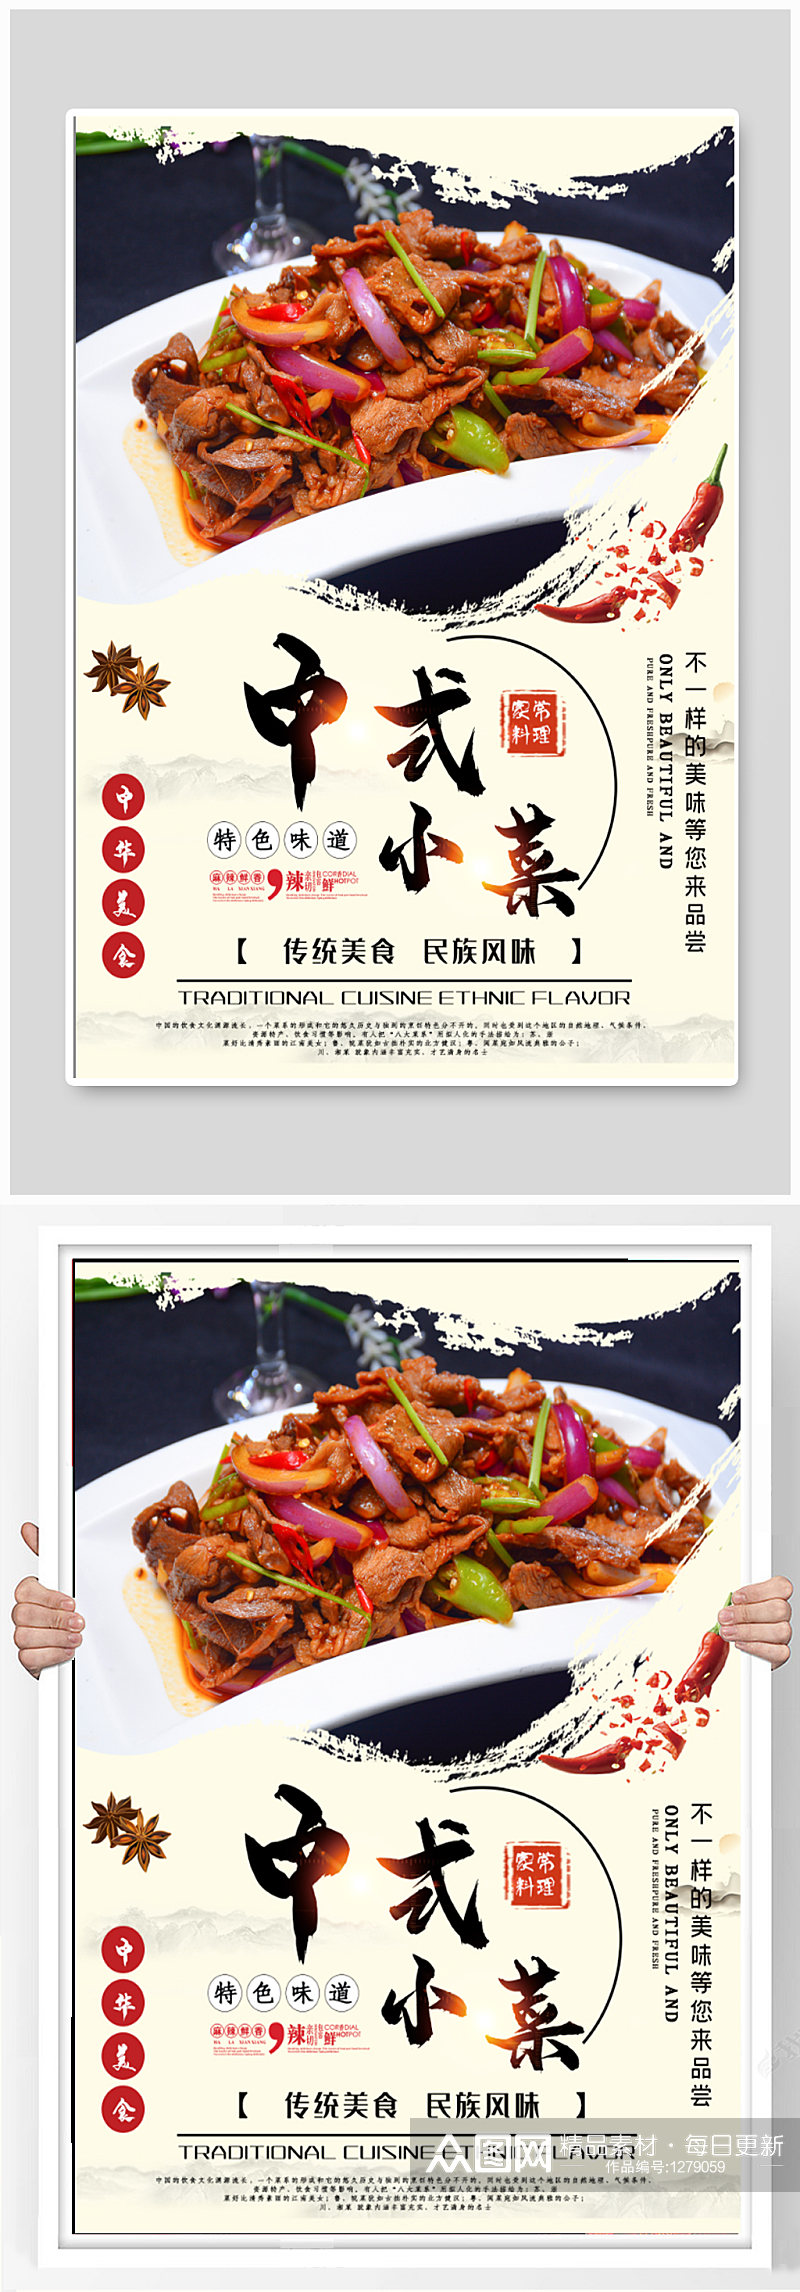 中式小菜美食宣传海报素材